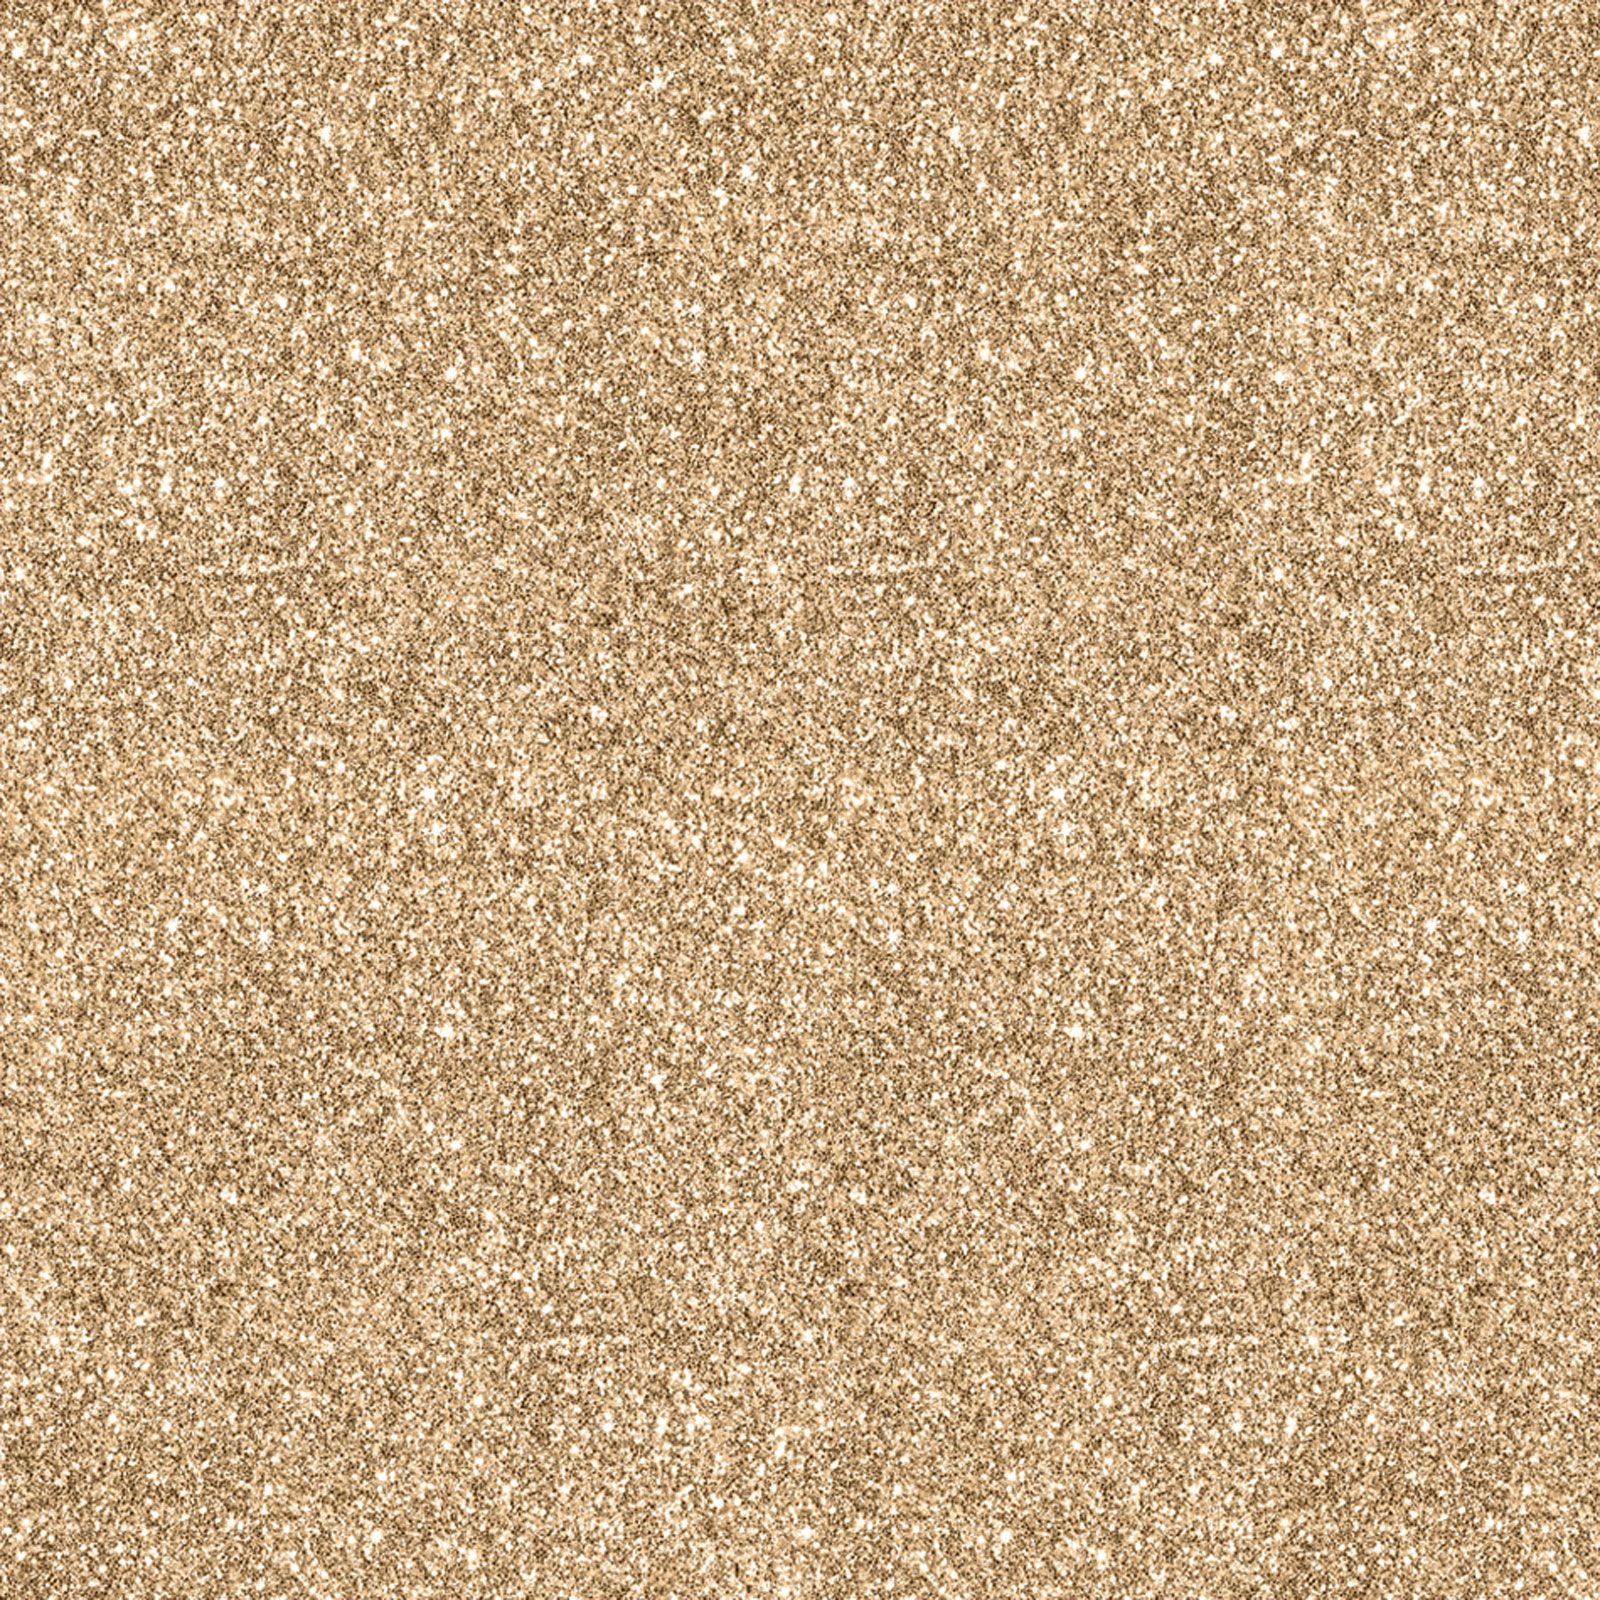 papel pintado de plata brillo,marrón,beige,arena,piso,suelo